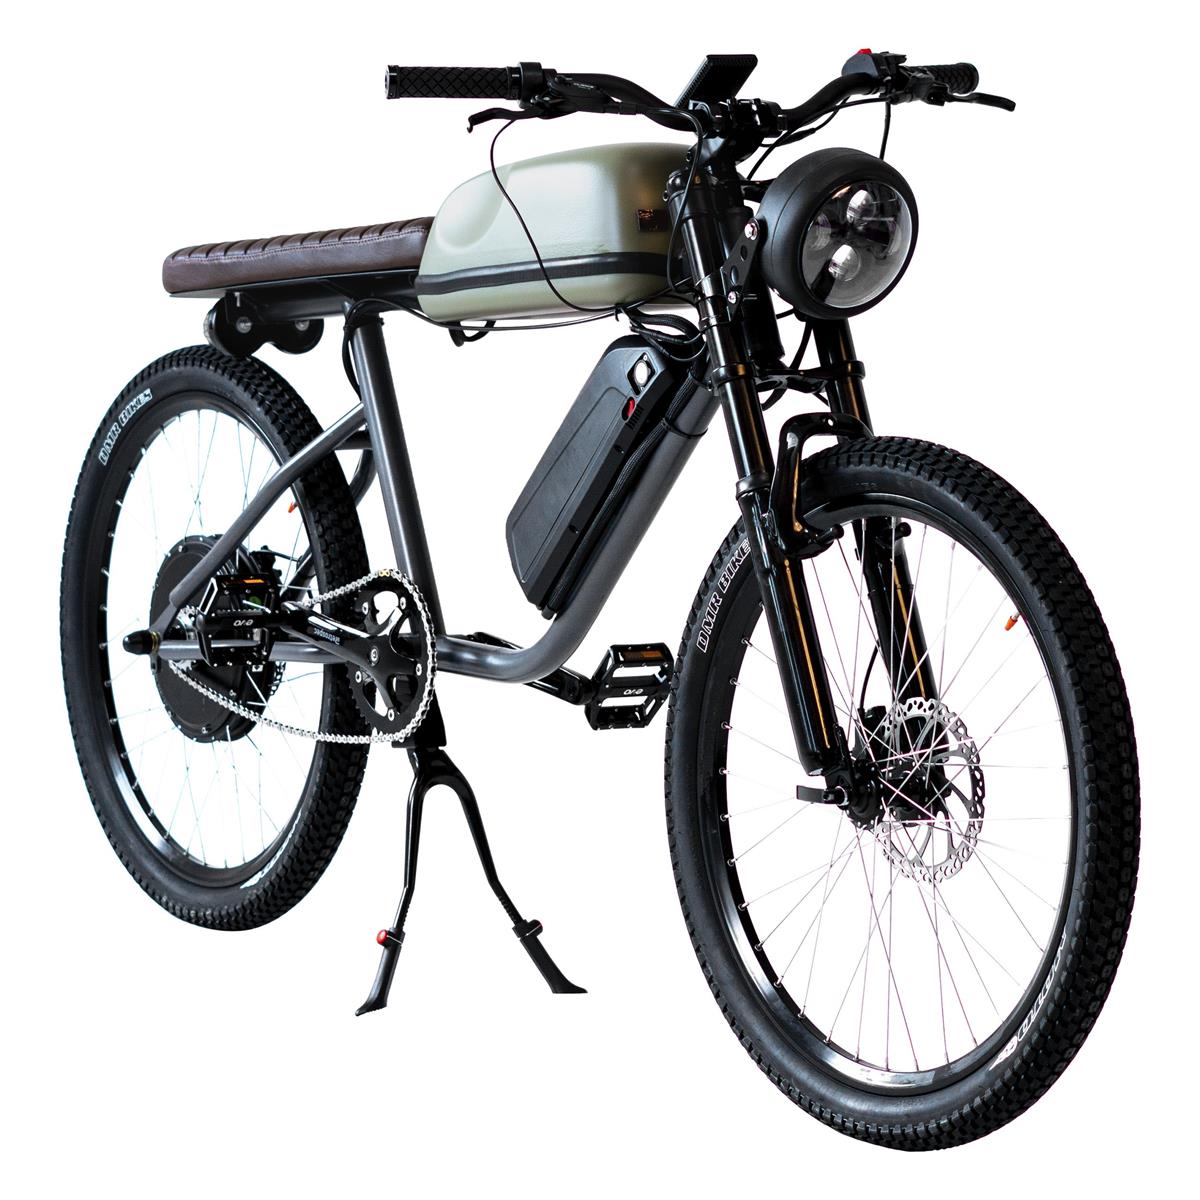 The Titan R Electric Bike by Tempus